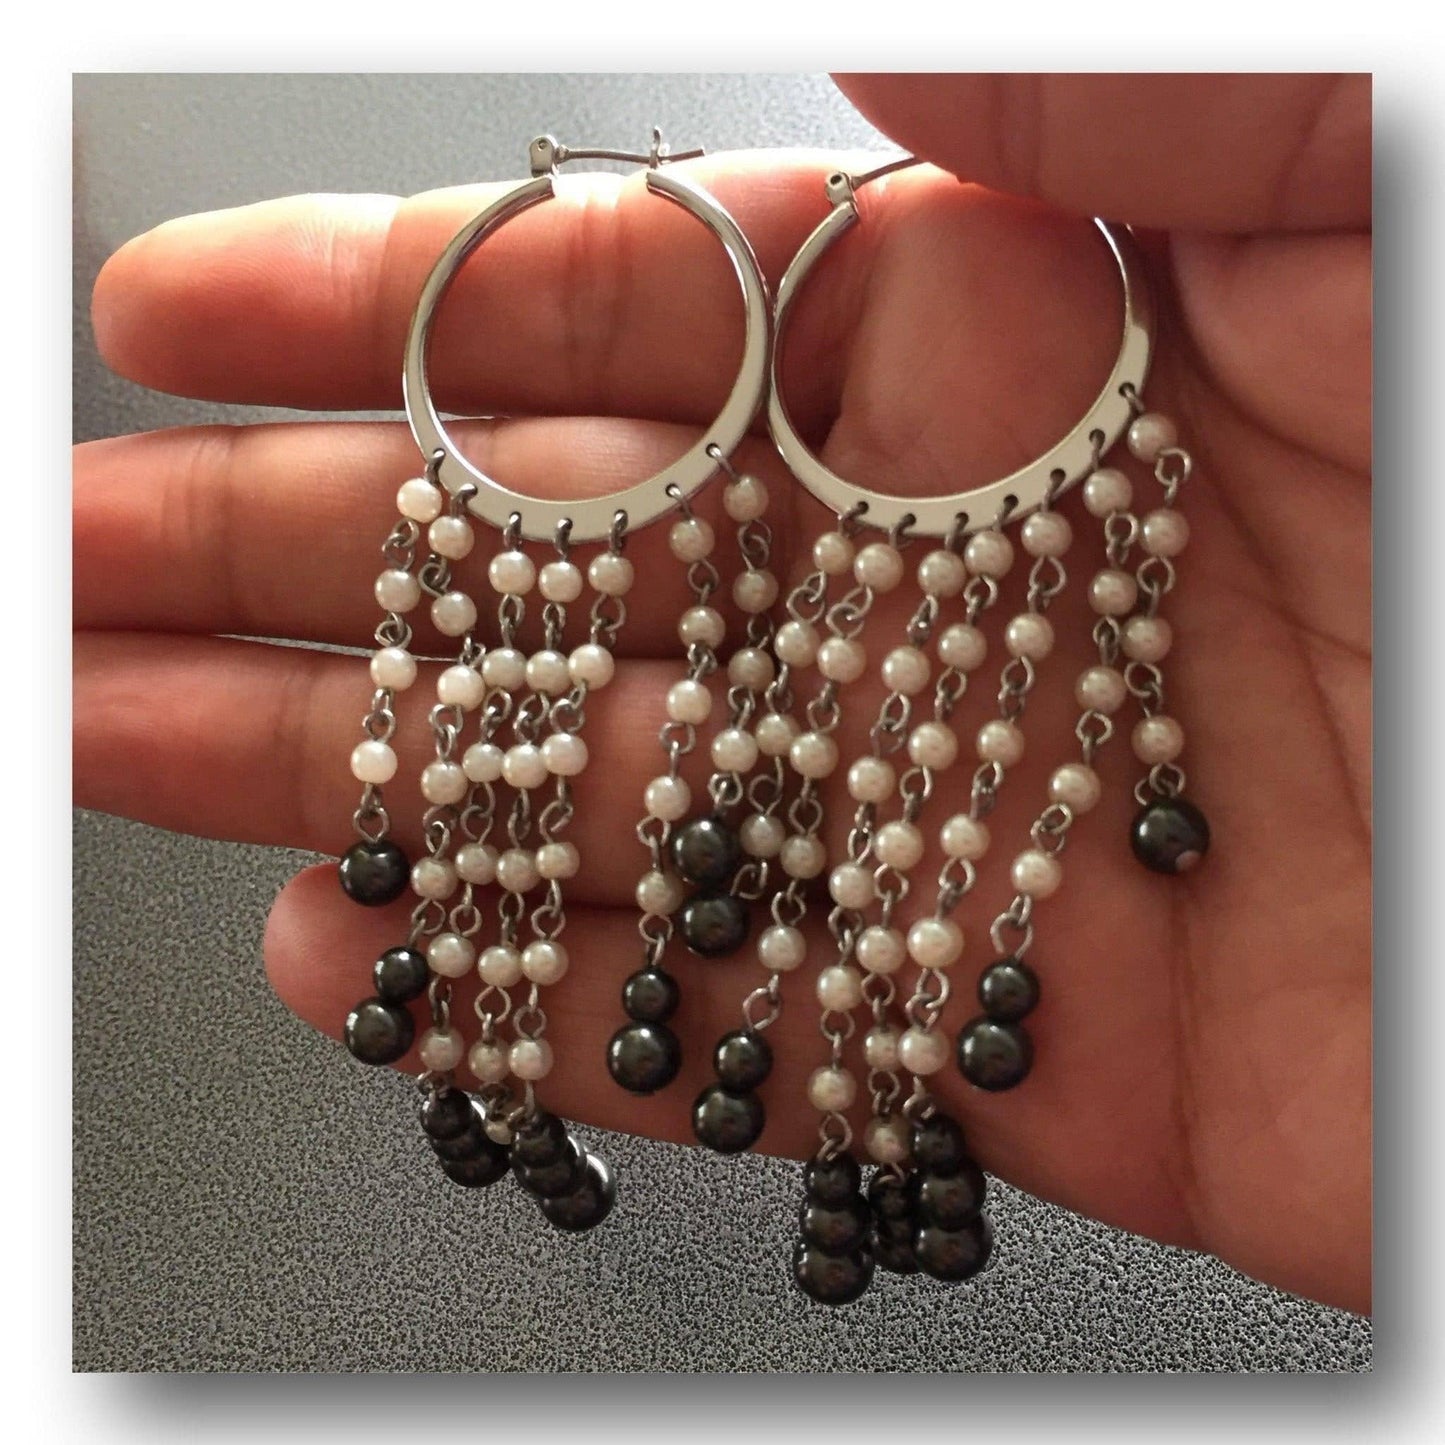 Chandelier Earrings Featuring Fringe Swingy Cascade Beads